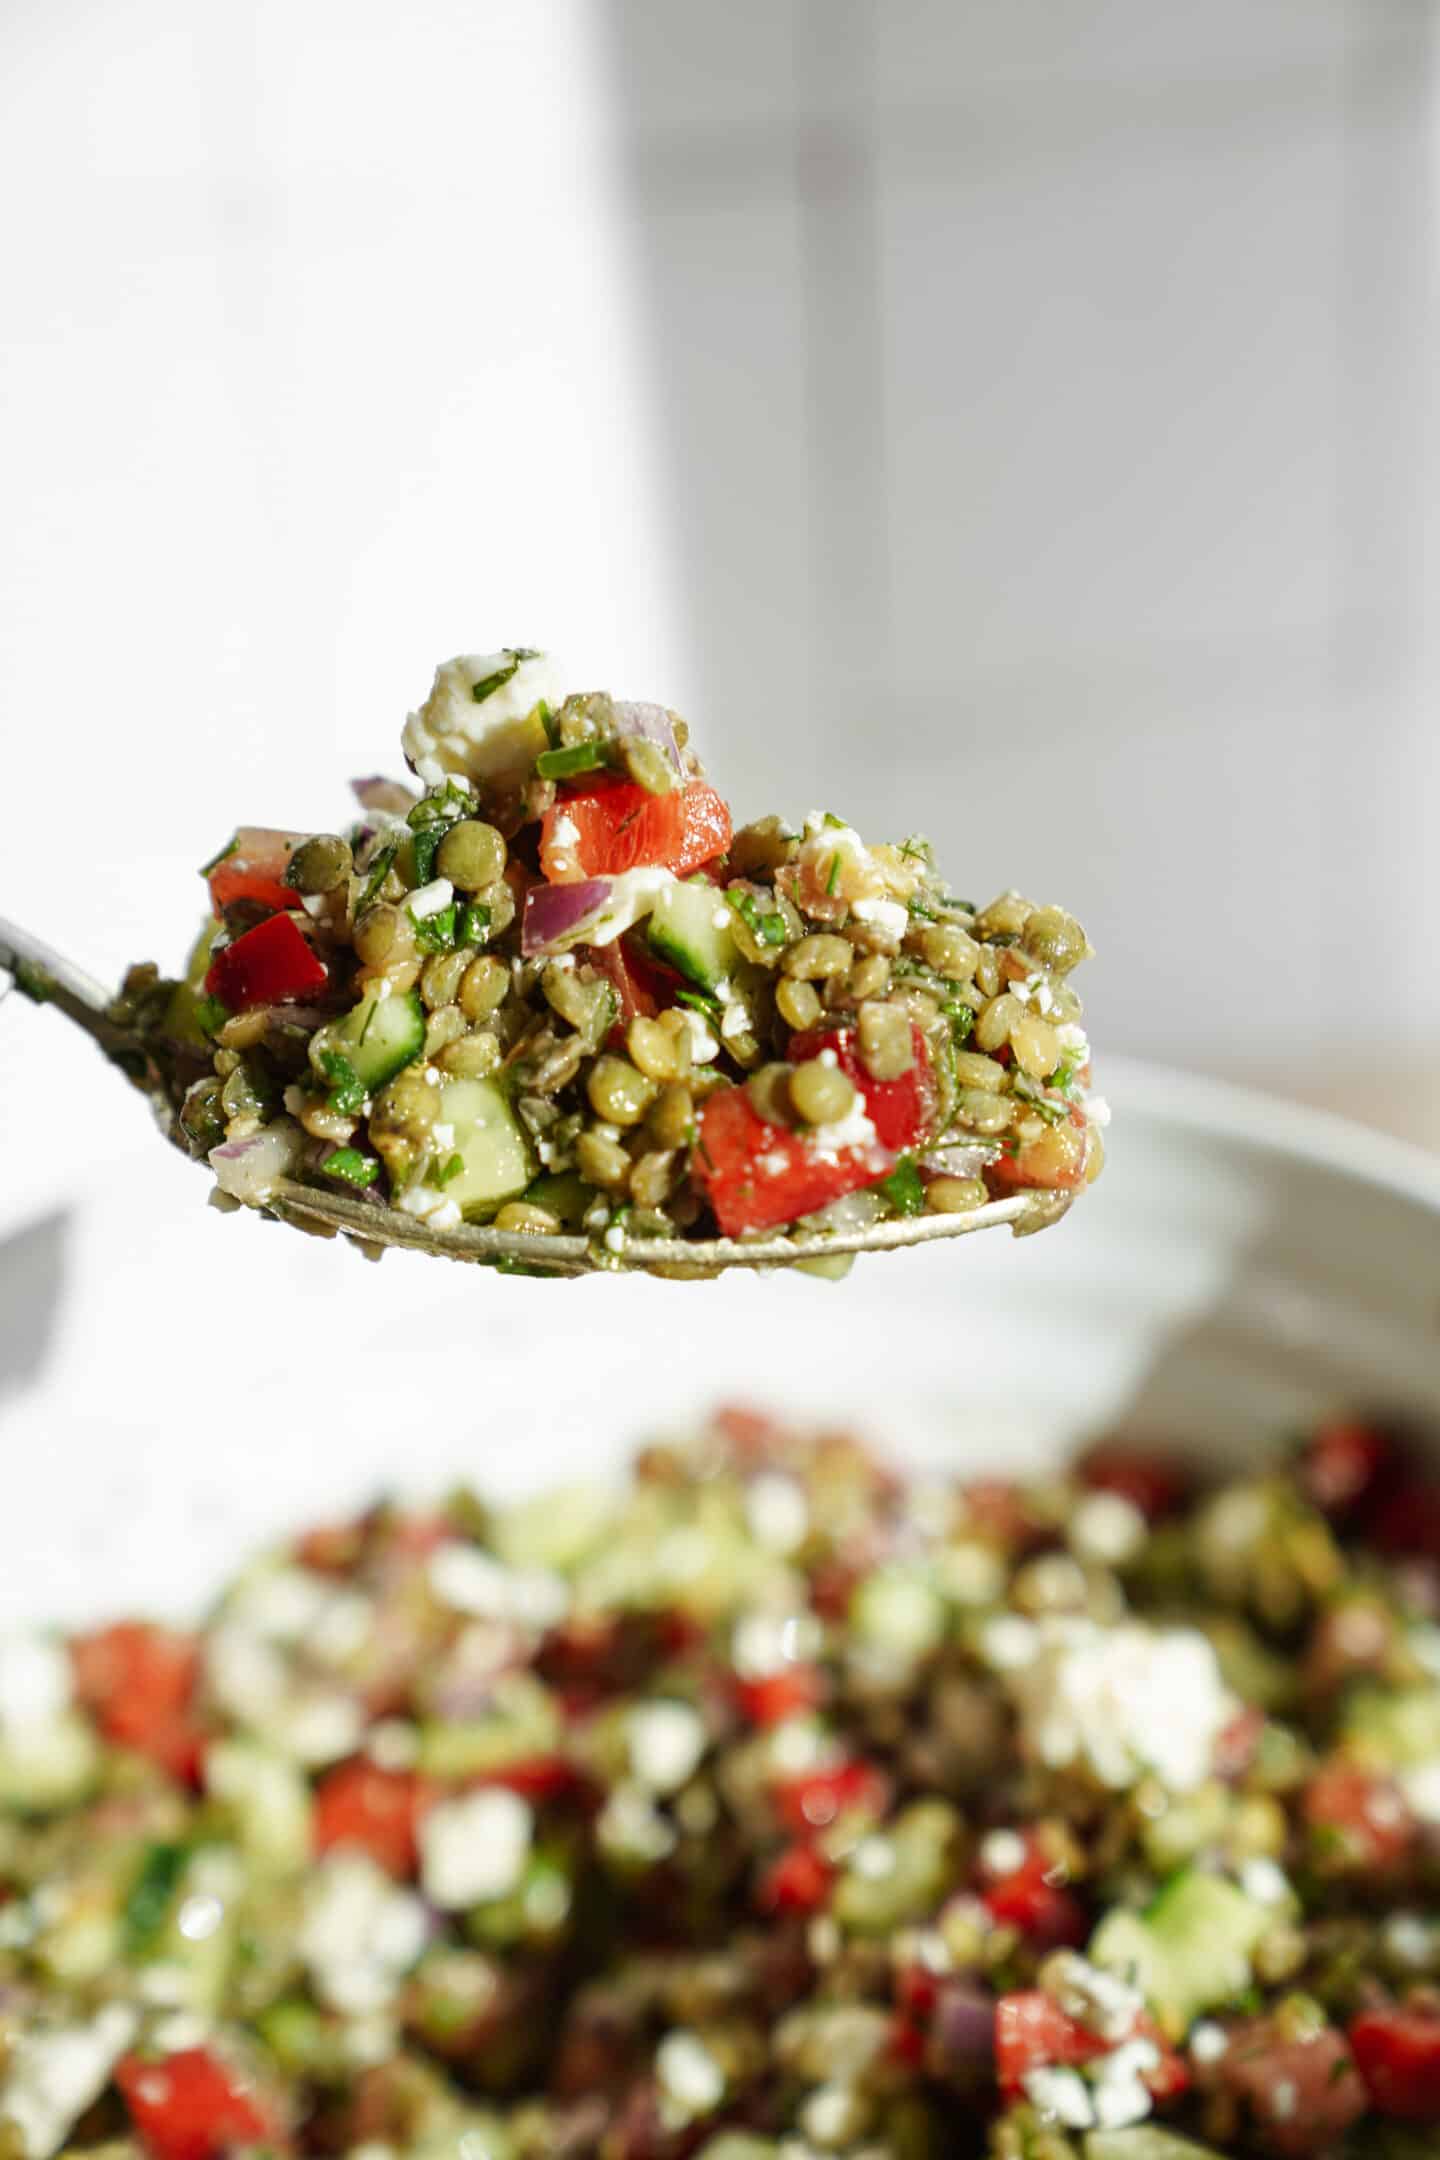 Spoon scooping lentil salad